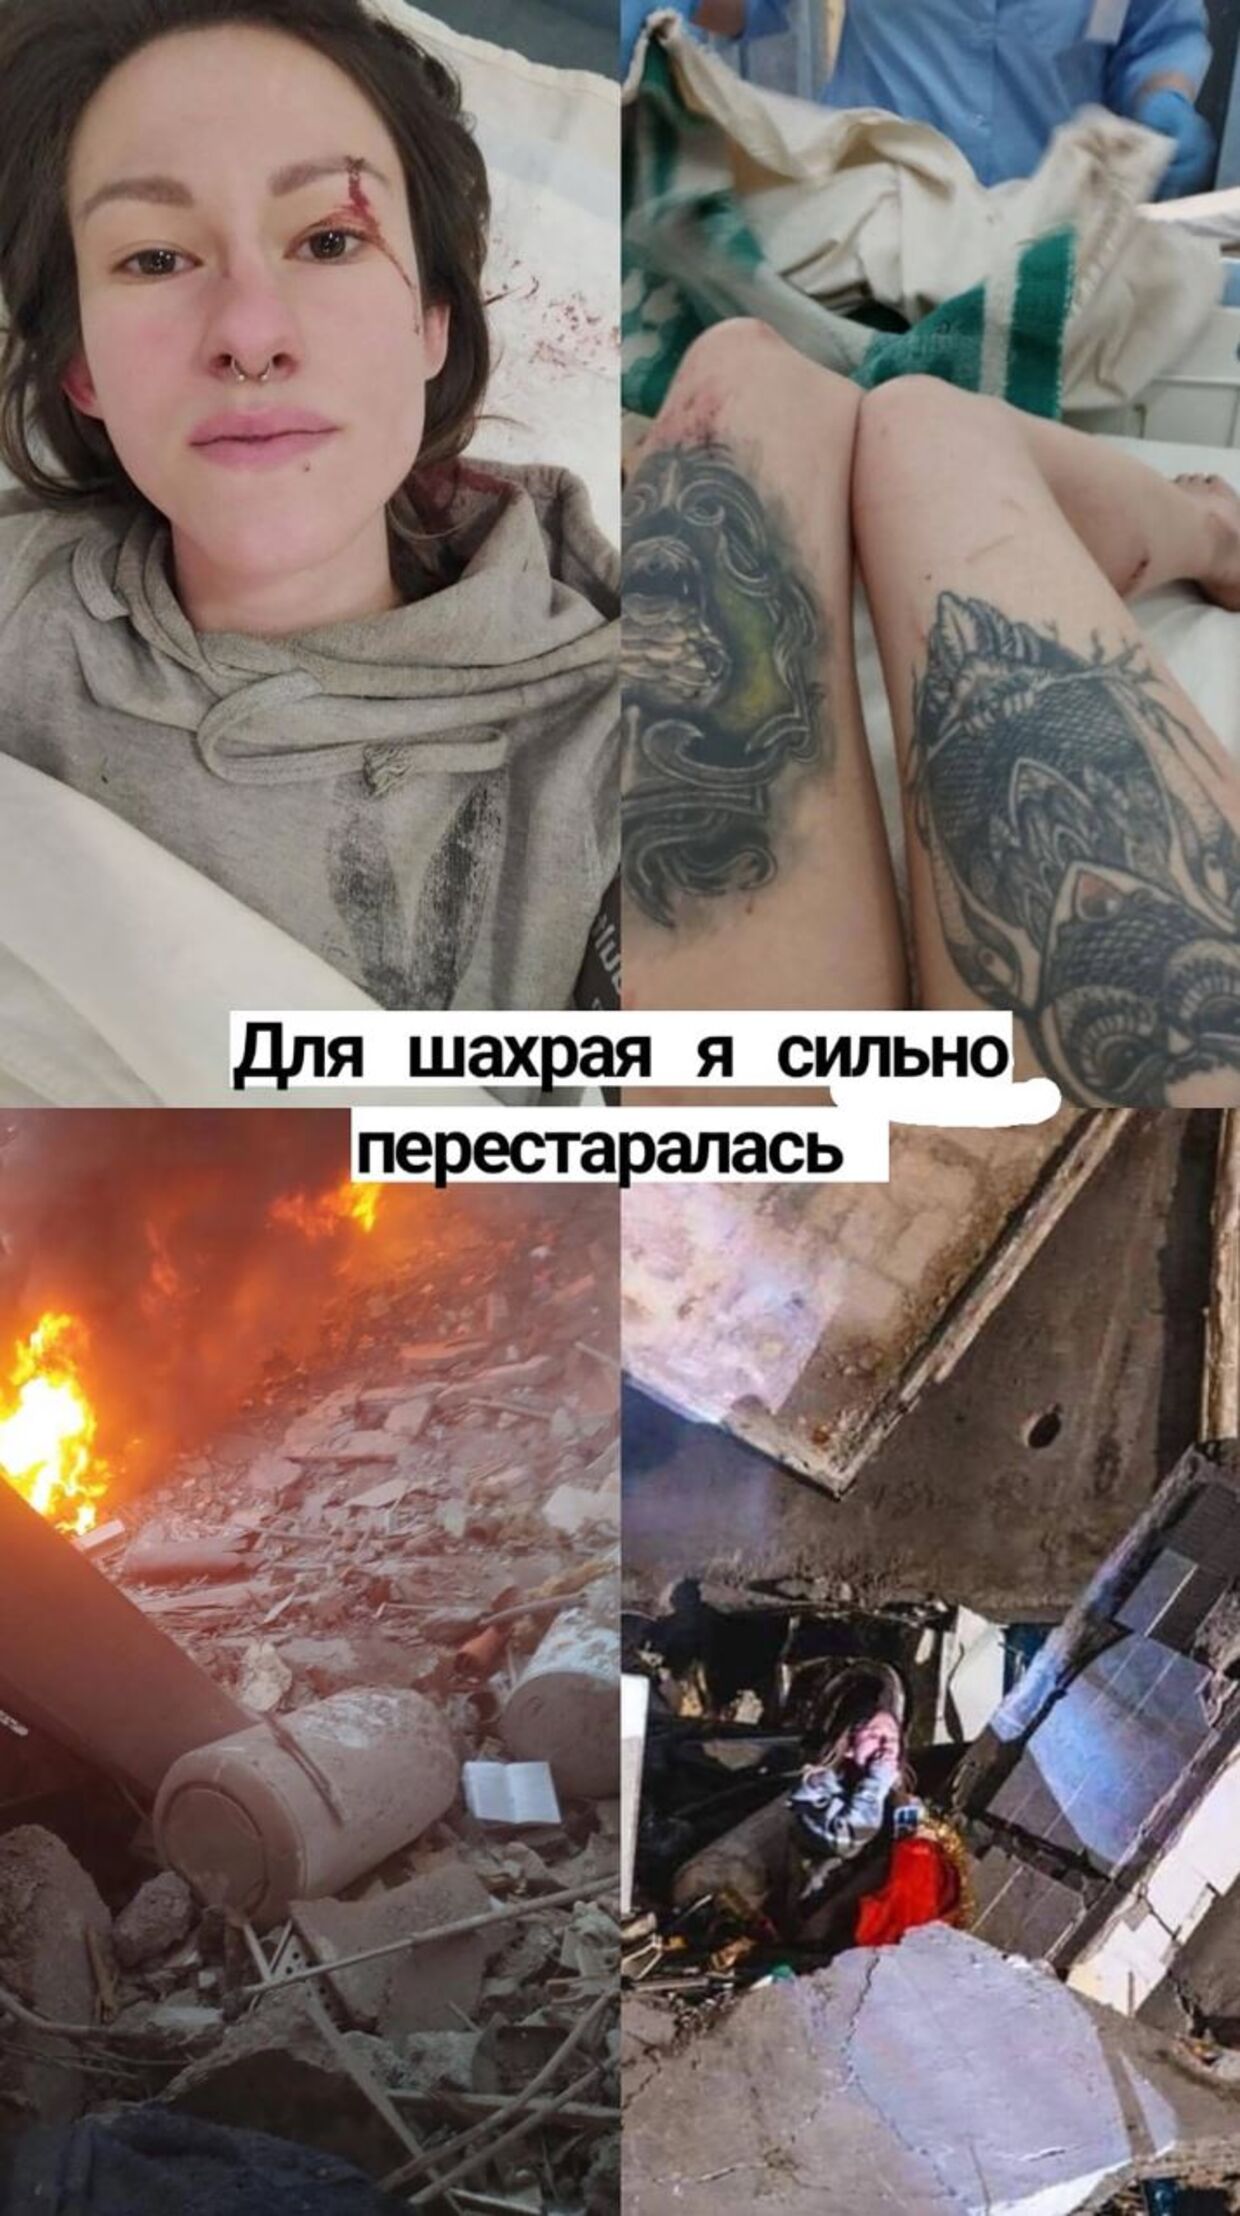 23-årige Anastasia Shvets fra Dnipro er angivelig kvinden på billedet fra den bombede boligblok.